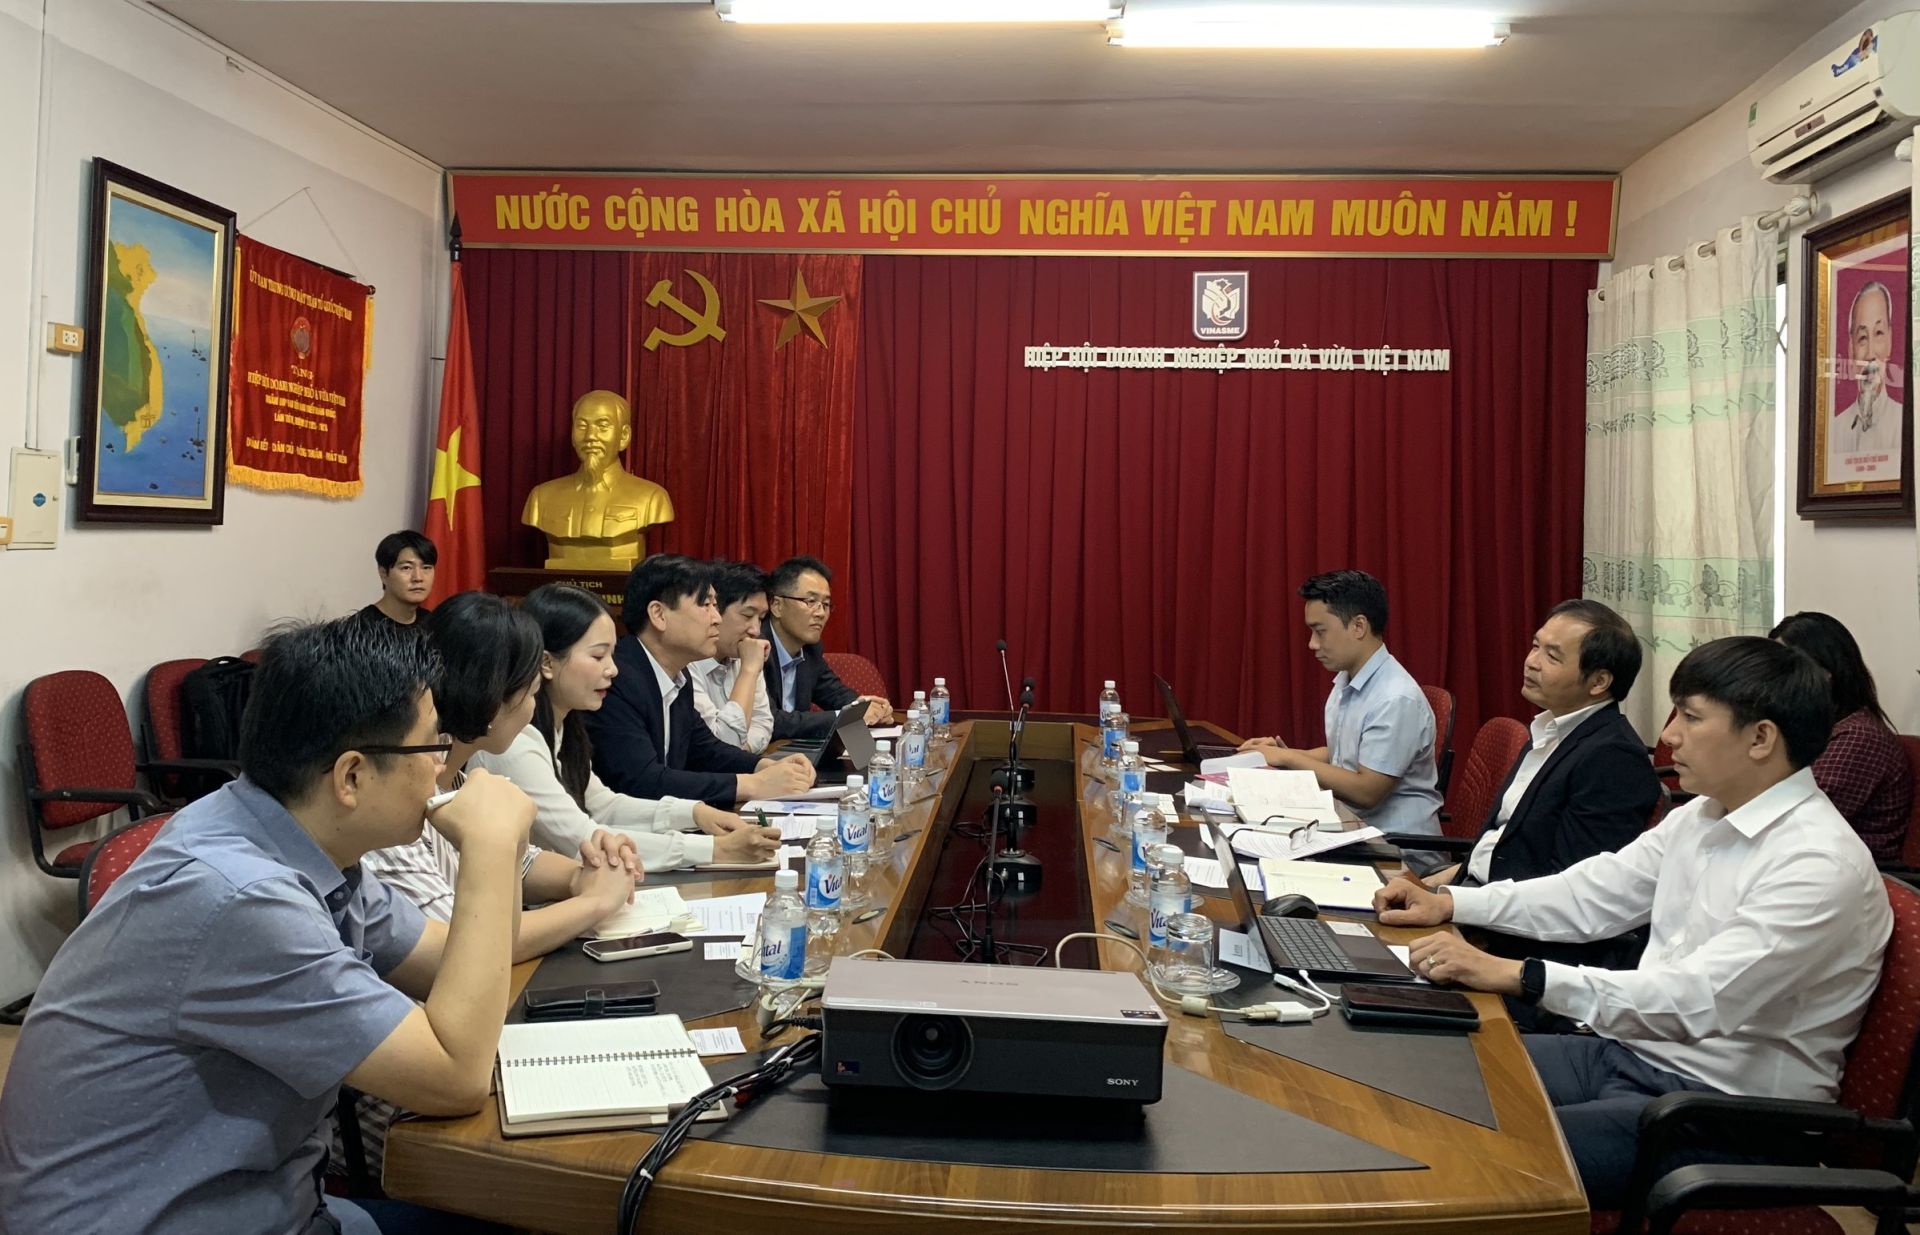 Ông Yu Byung Wook cùng các đại diện Cơ quan Phát triển Công nghiệp thành phố Siheung (Hàn Quốc) đã có chuyến thăm và làm việc với Hiệp hội Doanh nghiệp nhỏ và vừa Việt Nam ngày 12/9.